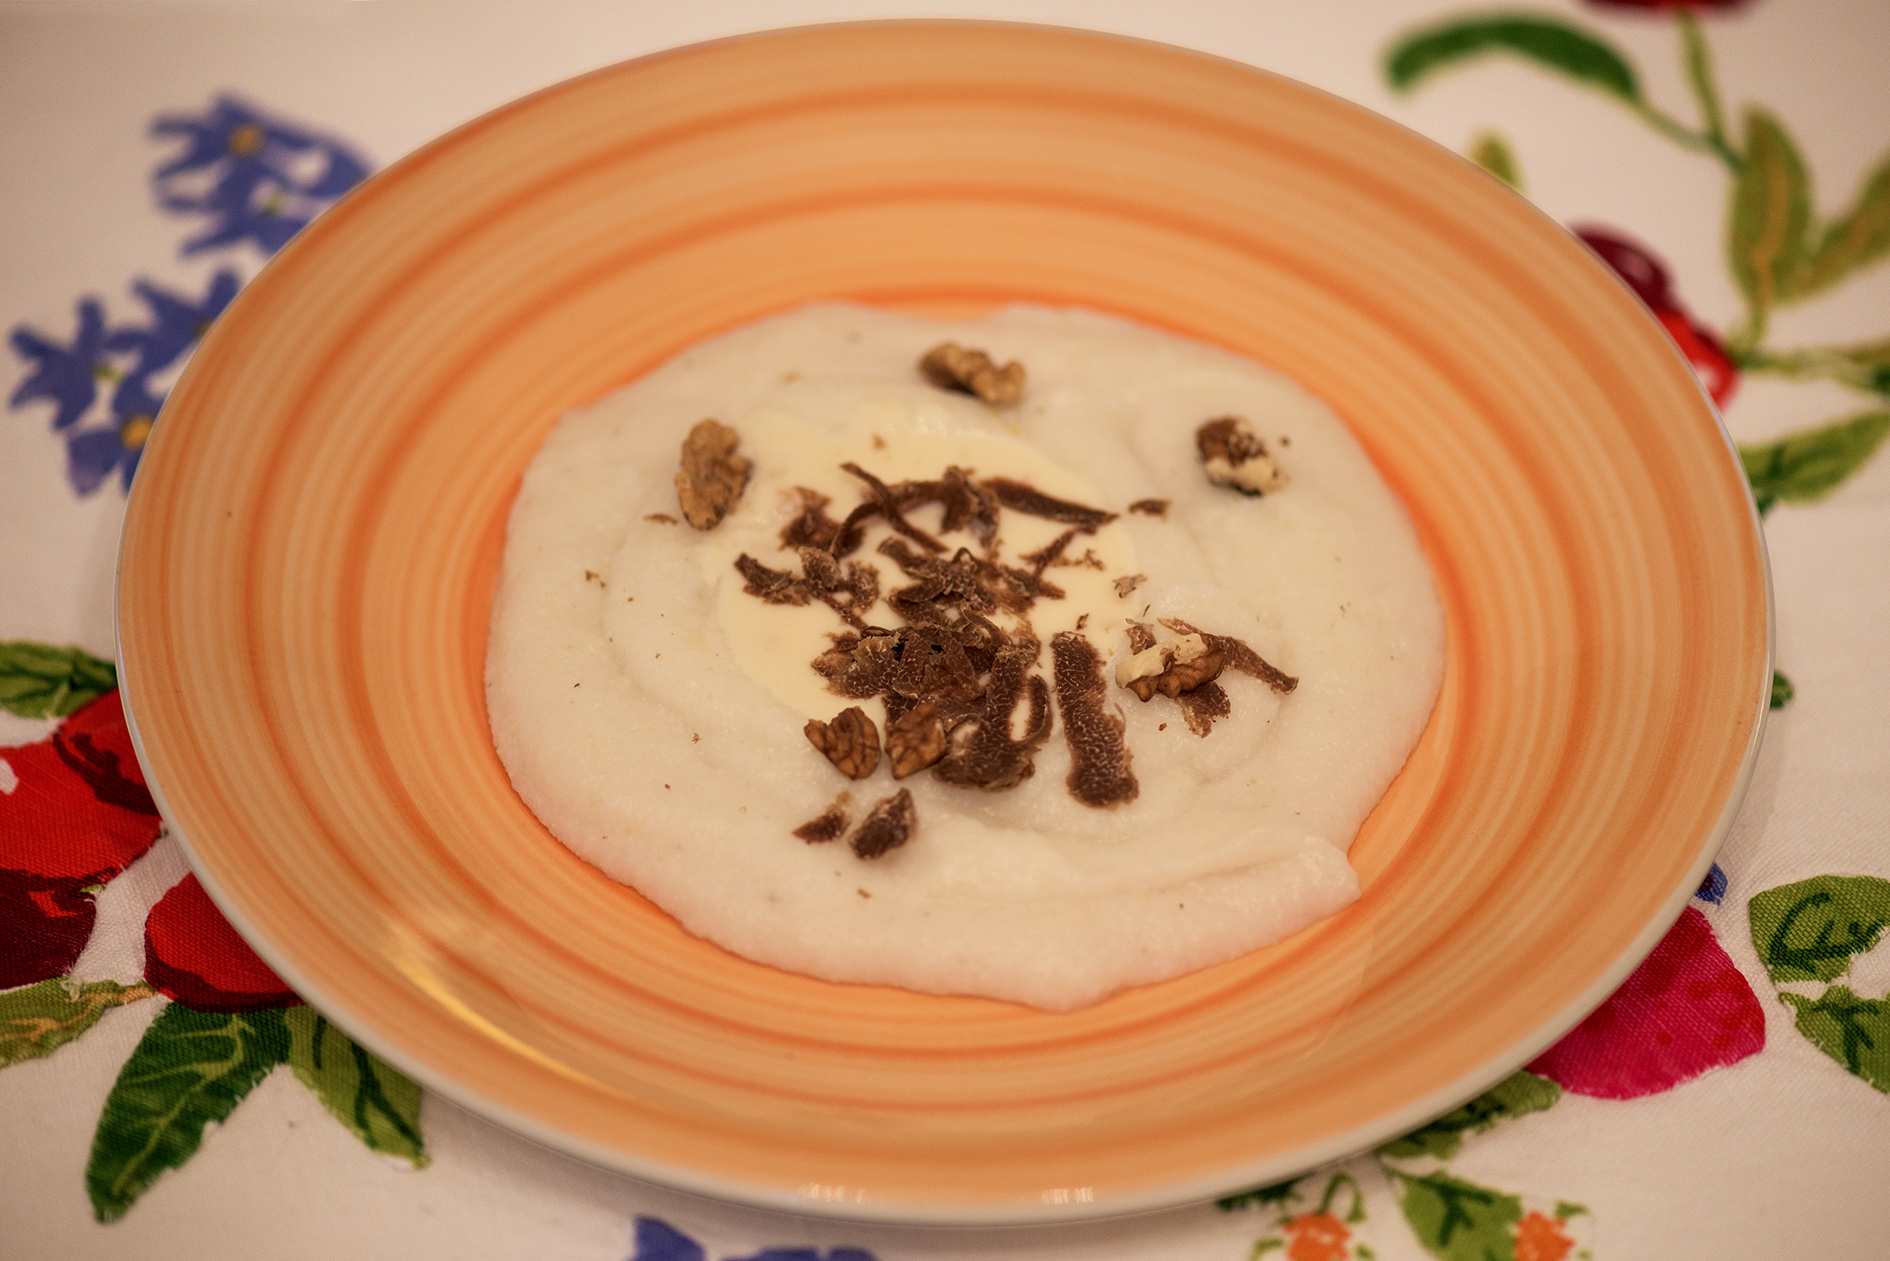 Crema di mais Biancoperla con fonduta di formaggi, tartufo e noci